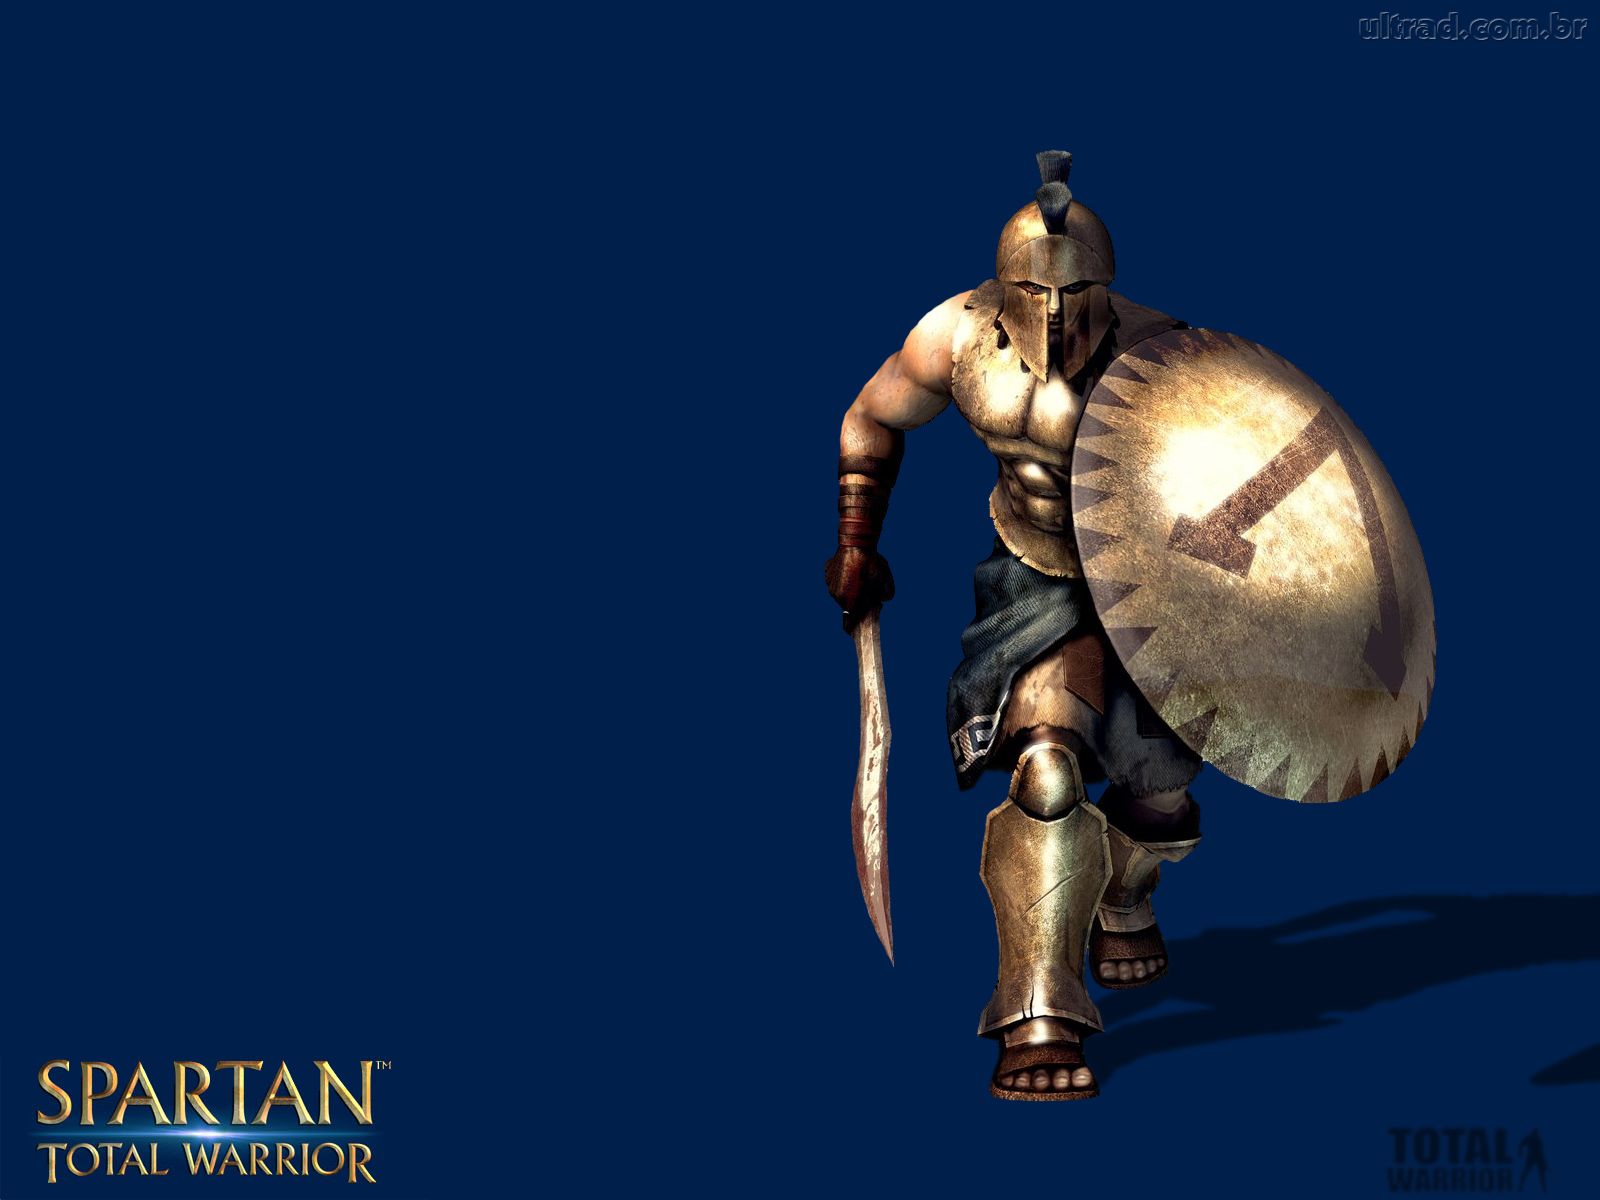 Spartan Total Warrior Wallpaper Bonecos Do Jogo